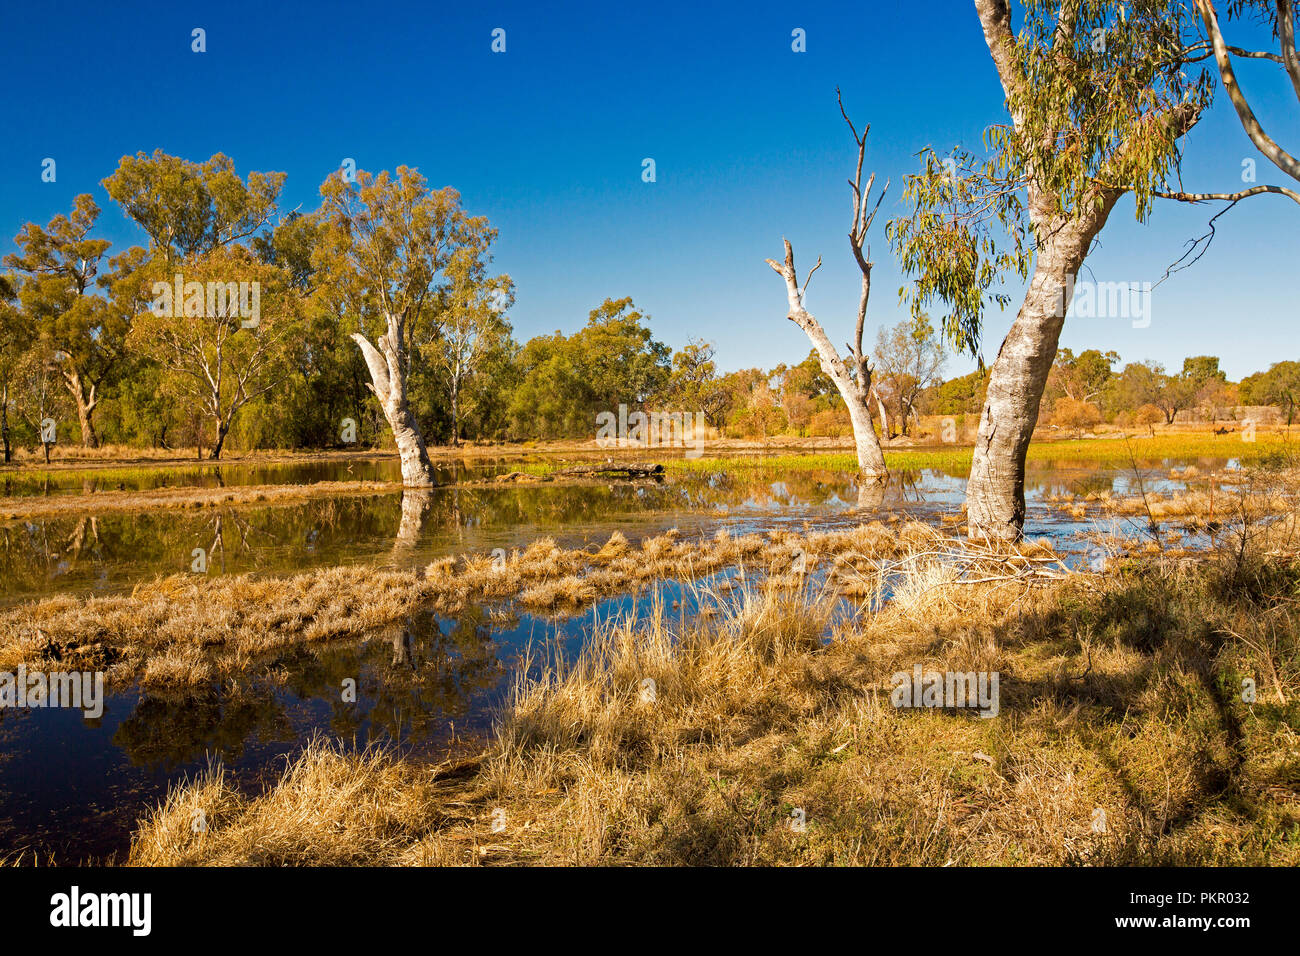 Colorato paesaggio australiano con golden erbe e canneti, gomma degli alberi e il blu del cielo si riflette nelle calme acque della baia di Tiger zone umide di Warren NSW Foto Stock